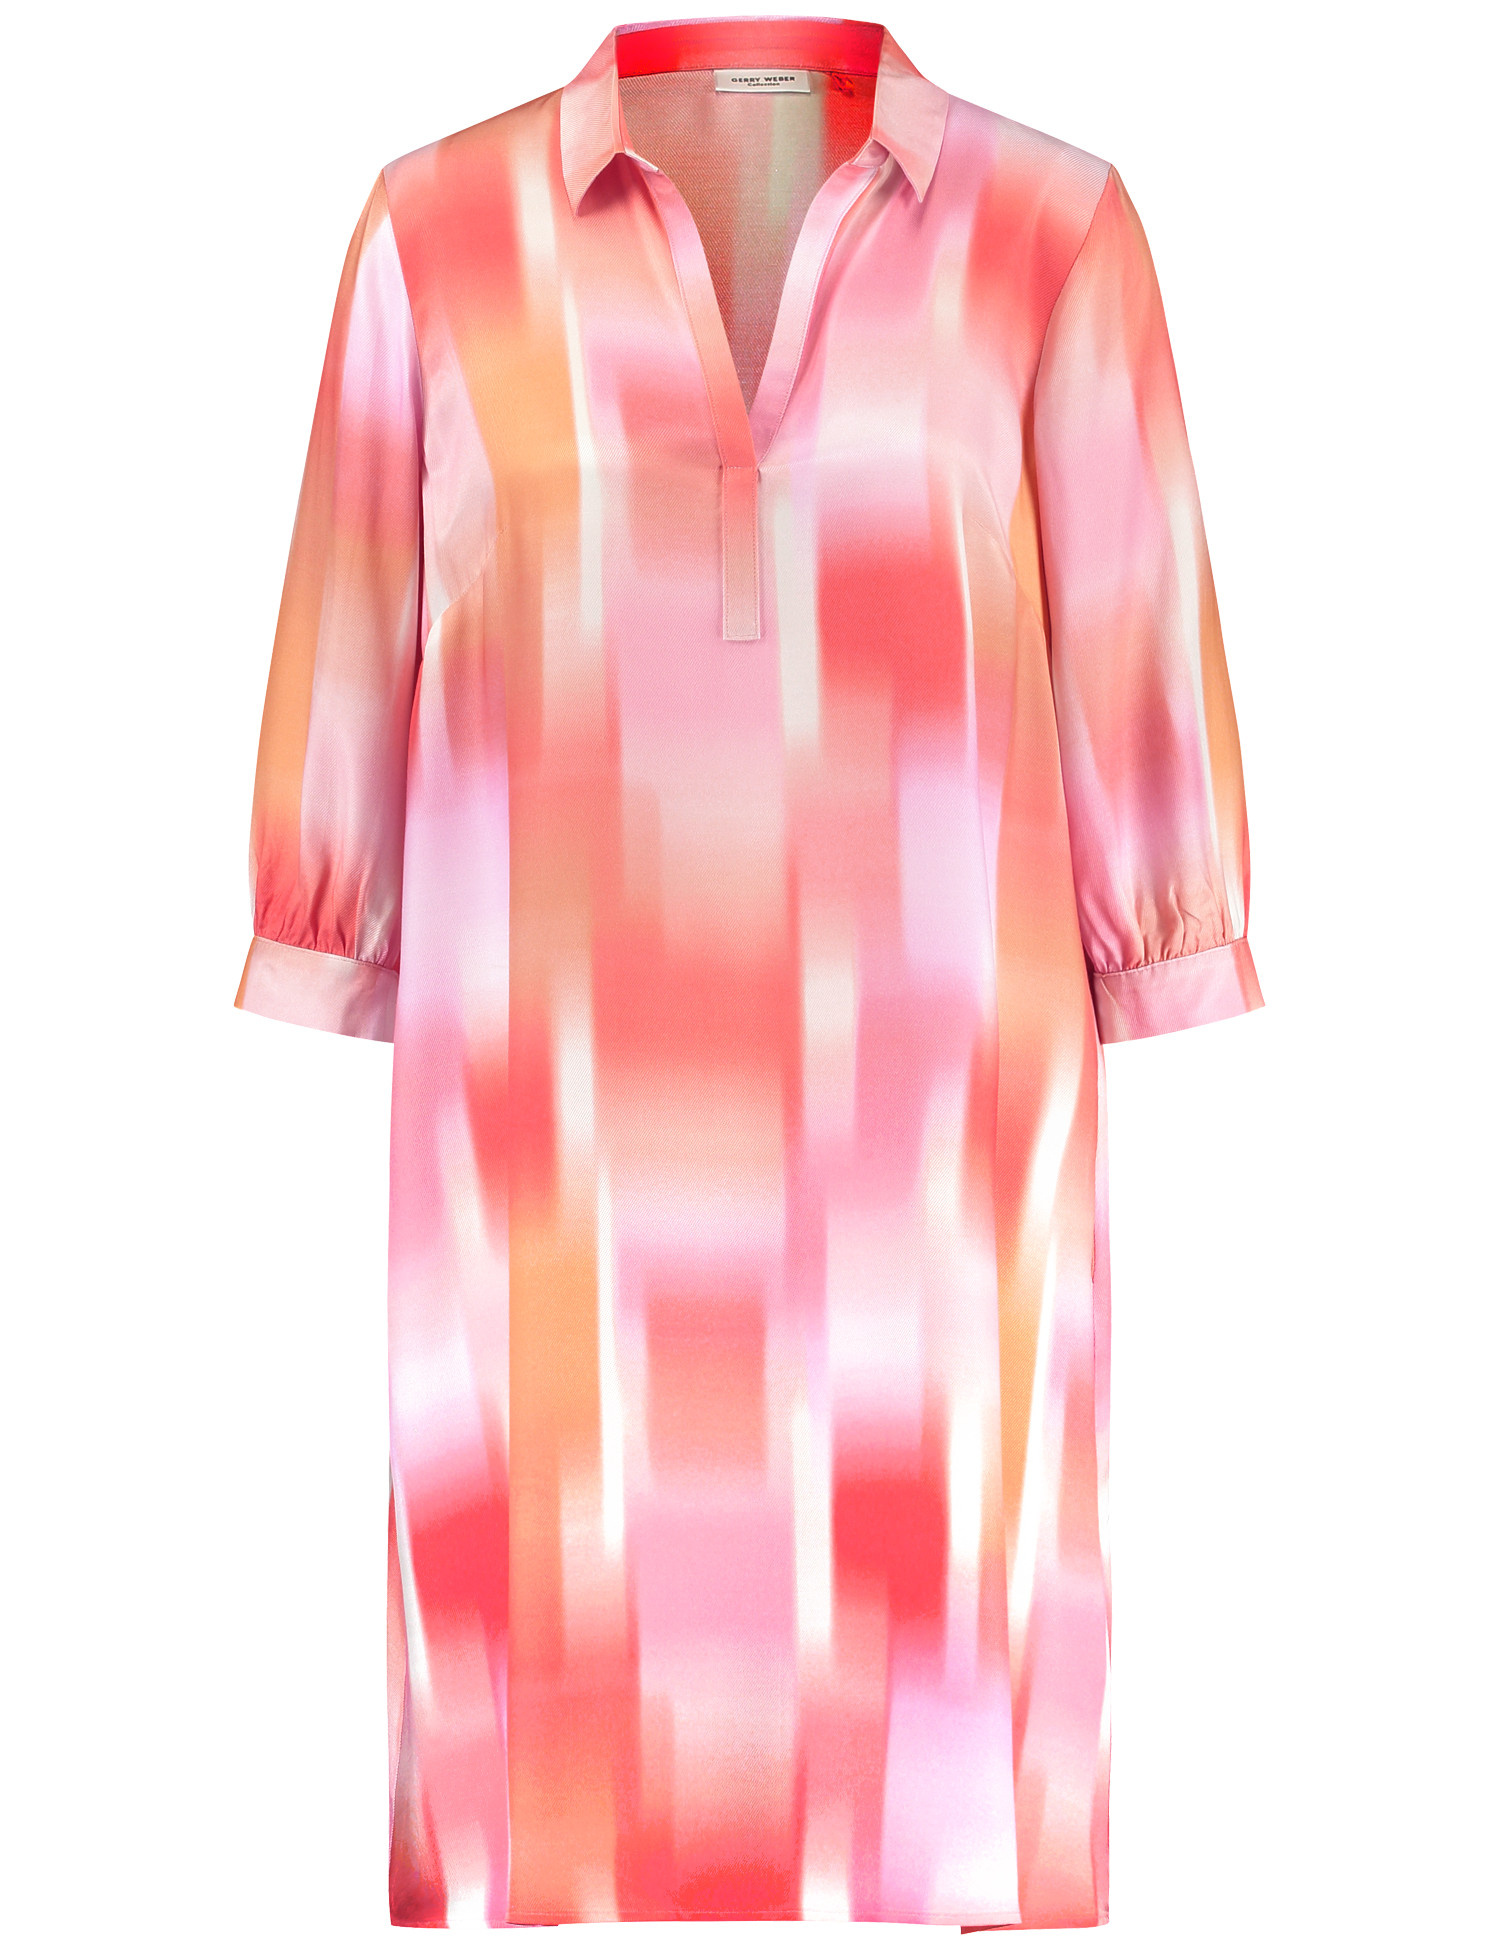 GERRY WEBER Damen Nachhaltiges Blusenkleid 3/4 Arm Mit Kragen Viskose Pink gemustert, 40 von Gerry Weber